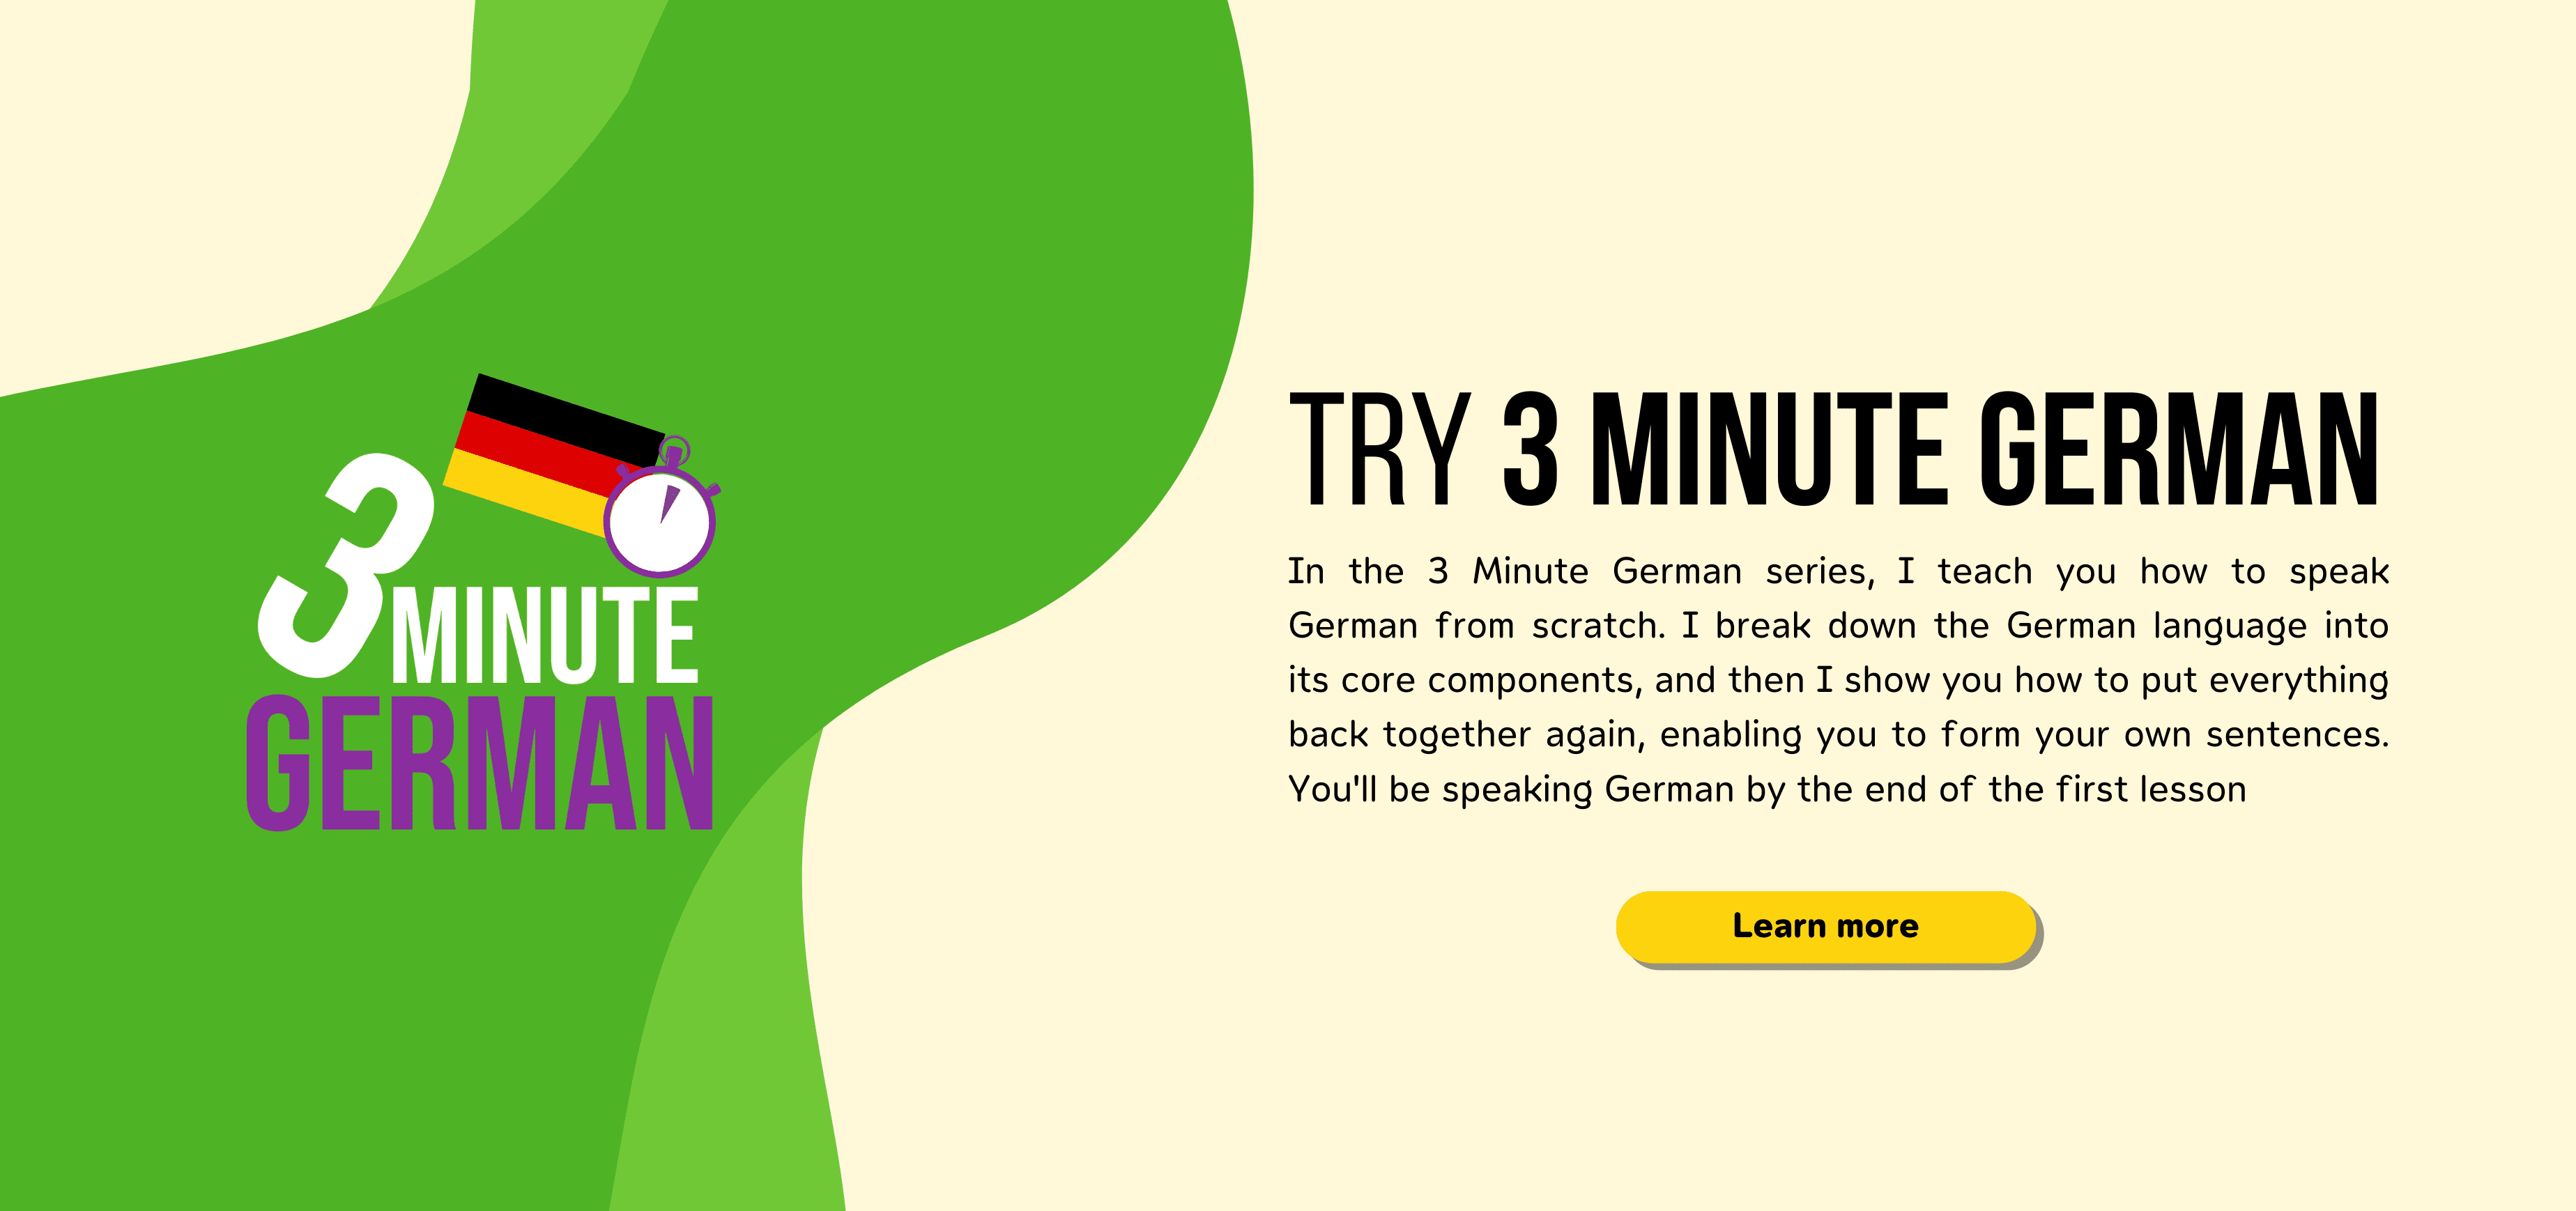 Try 3 Minute German